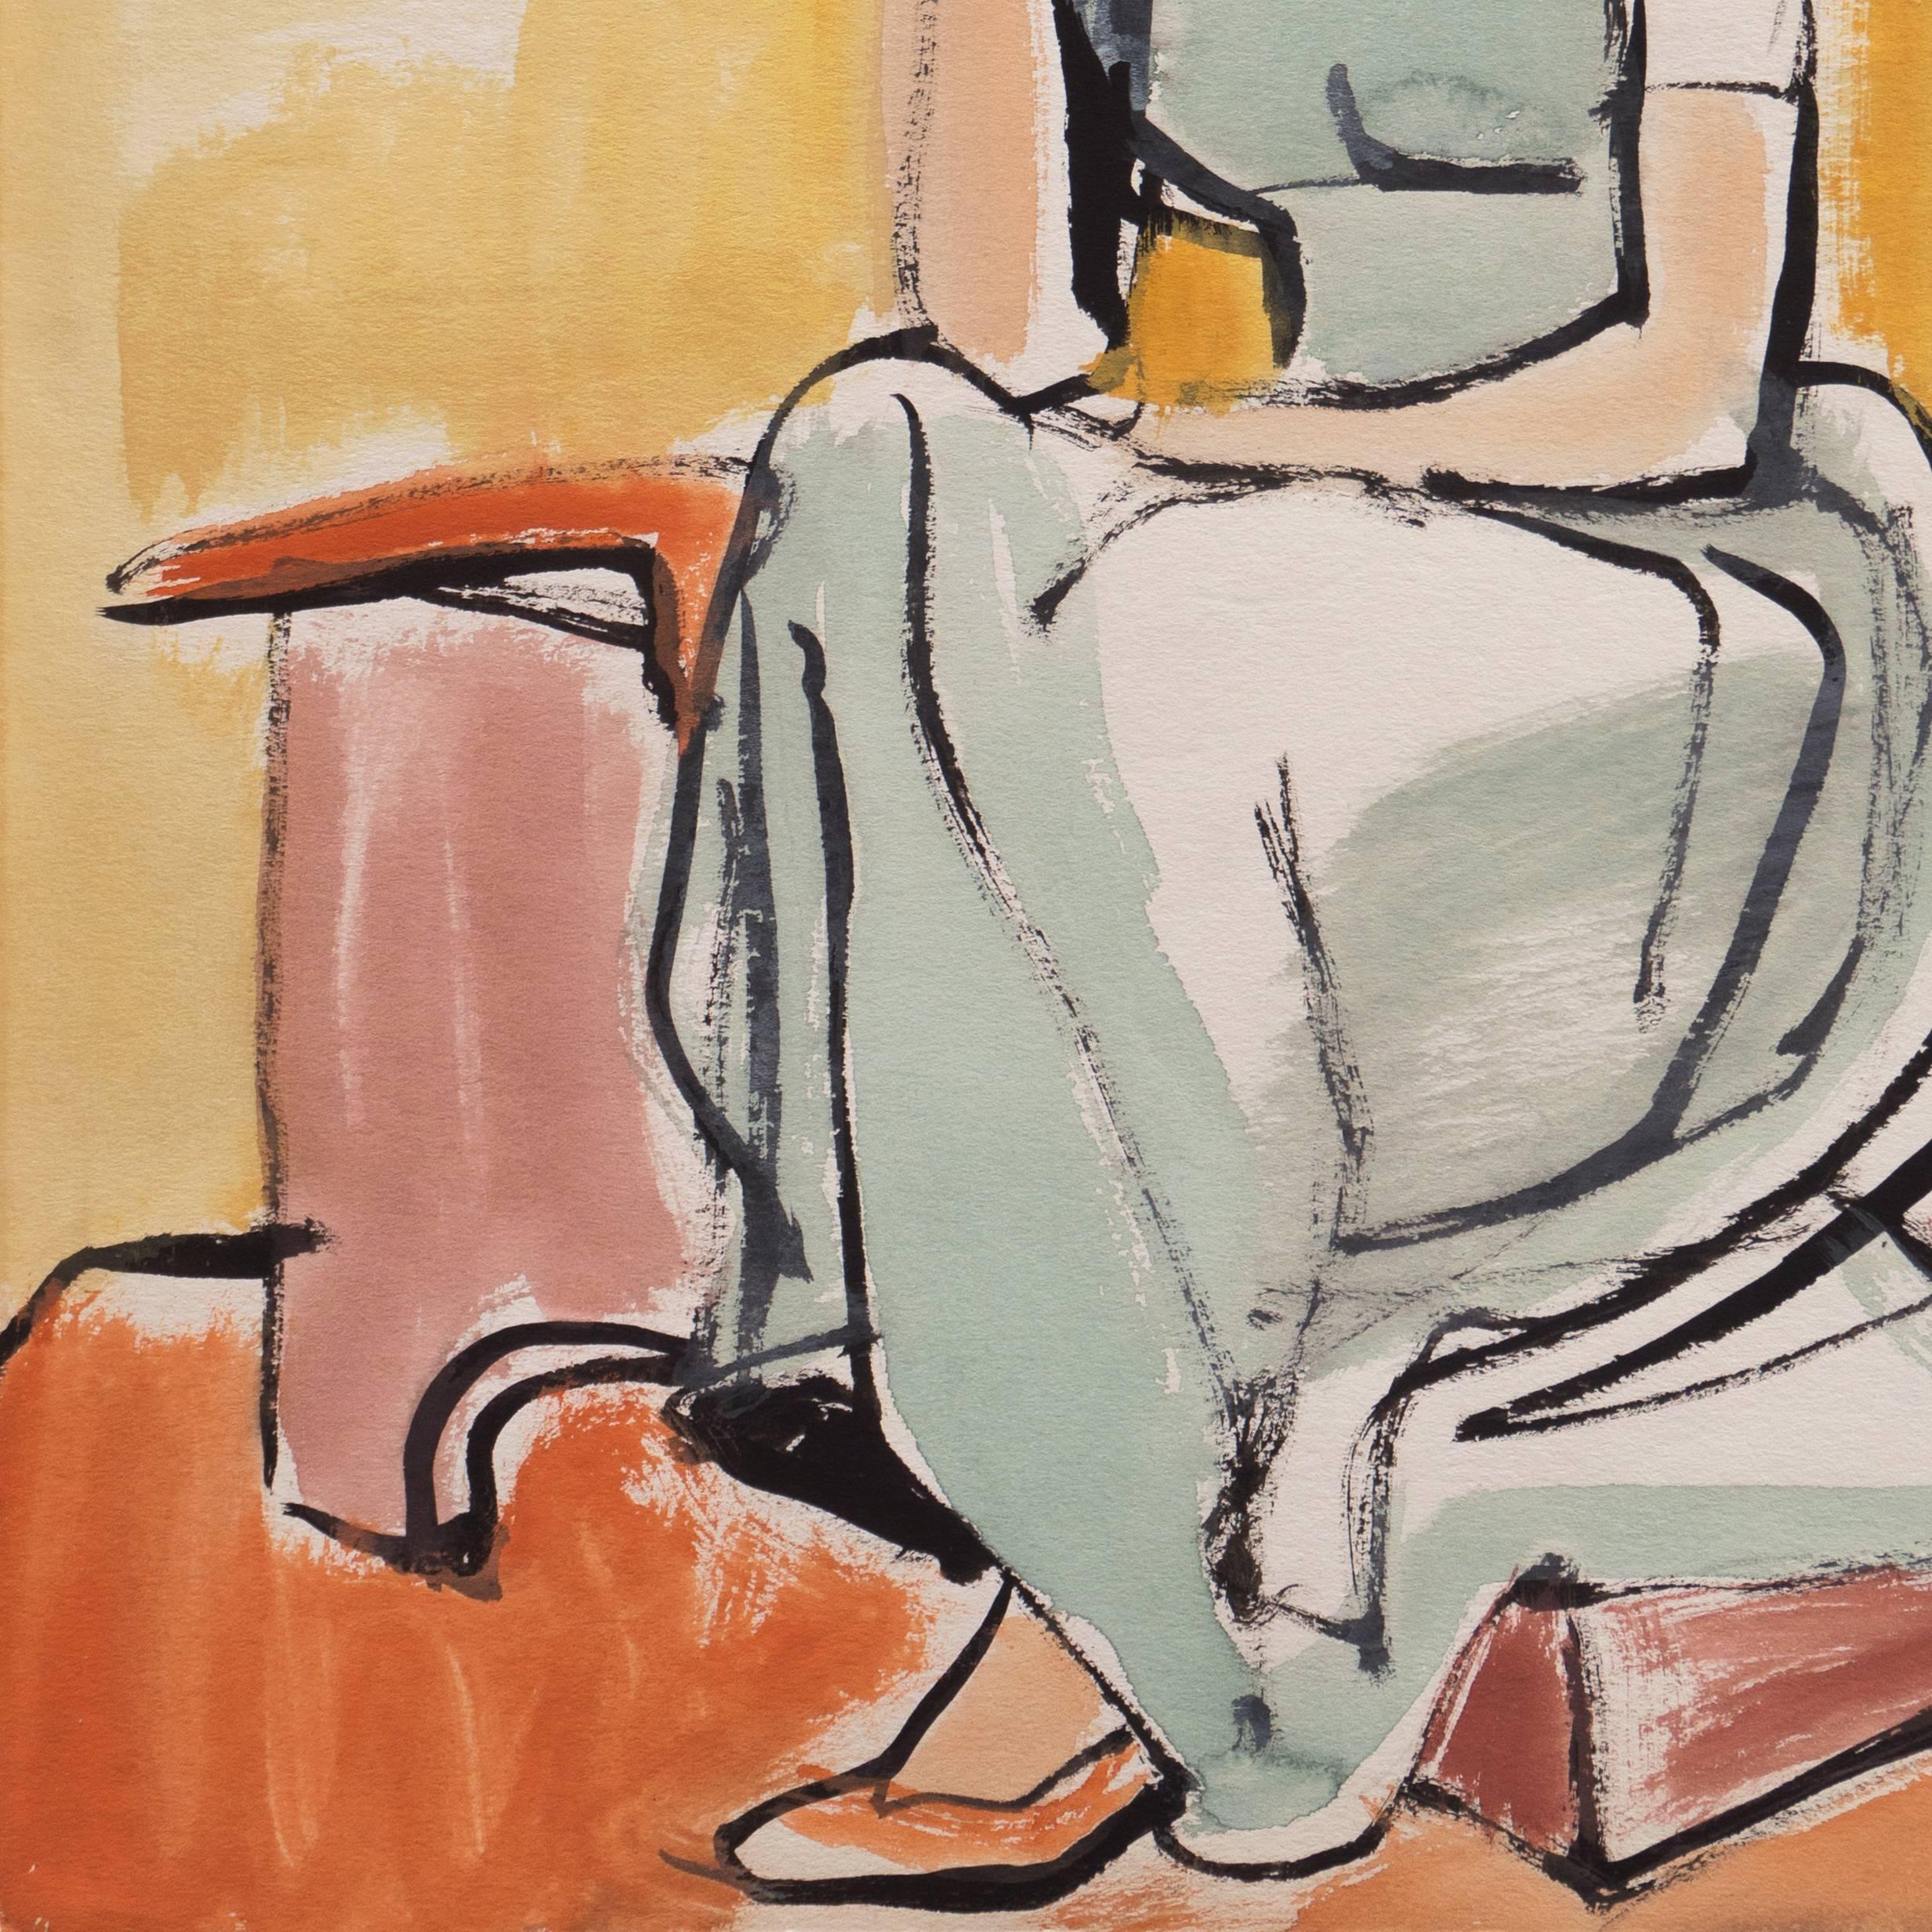 Certificat d'authenticité tamponné au verso pour Jerry Opper (américain, 1914-2014).

Une vue moderniste américaine lyrique d'une jeune femme assise dans un intérieur, regardant vers le spectateur, le menton posé pensivement sur sa main.

Né à